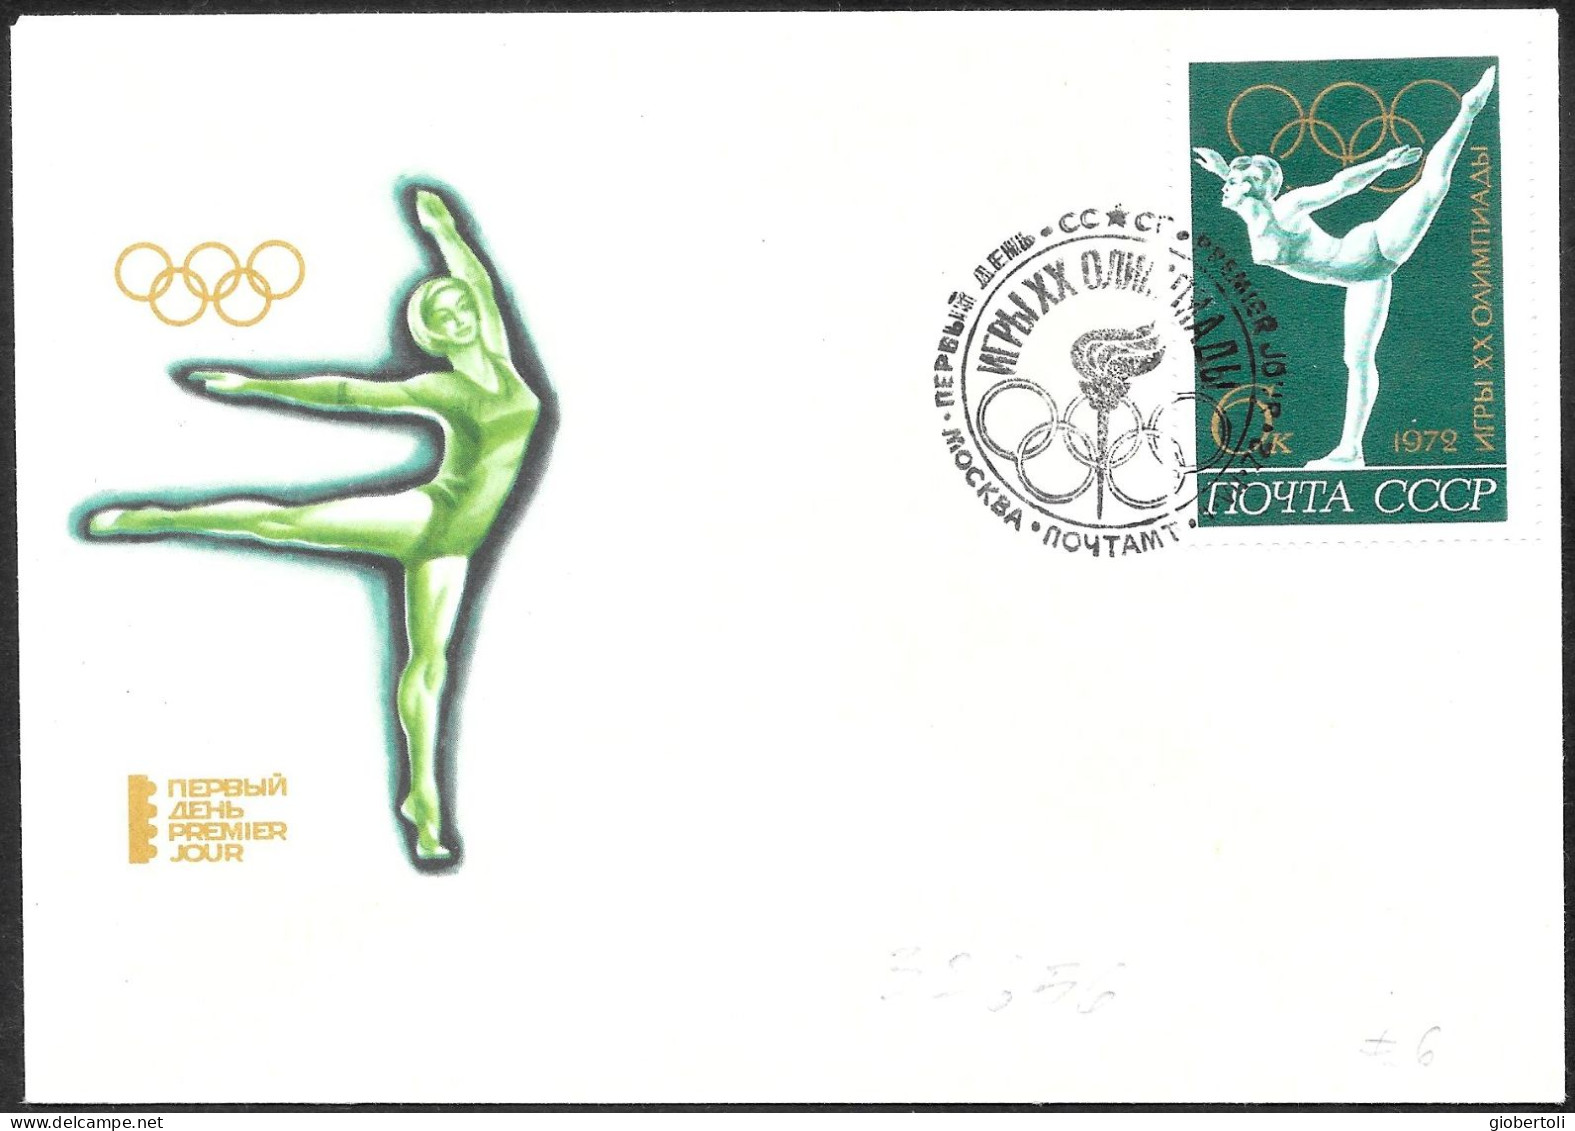 URSS: FDC, Ginnastica Femminile, Women's Gymnastics, Gymnastique Féminine - Ete 1972: Munich